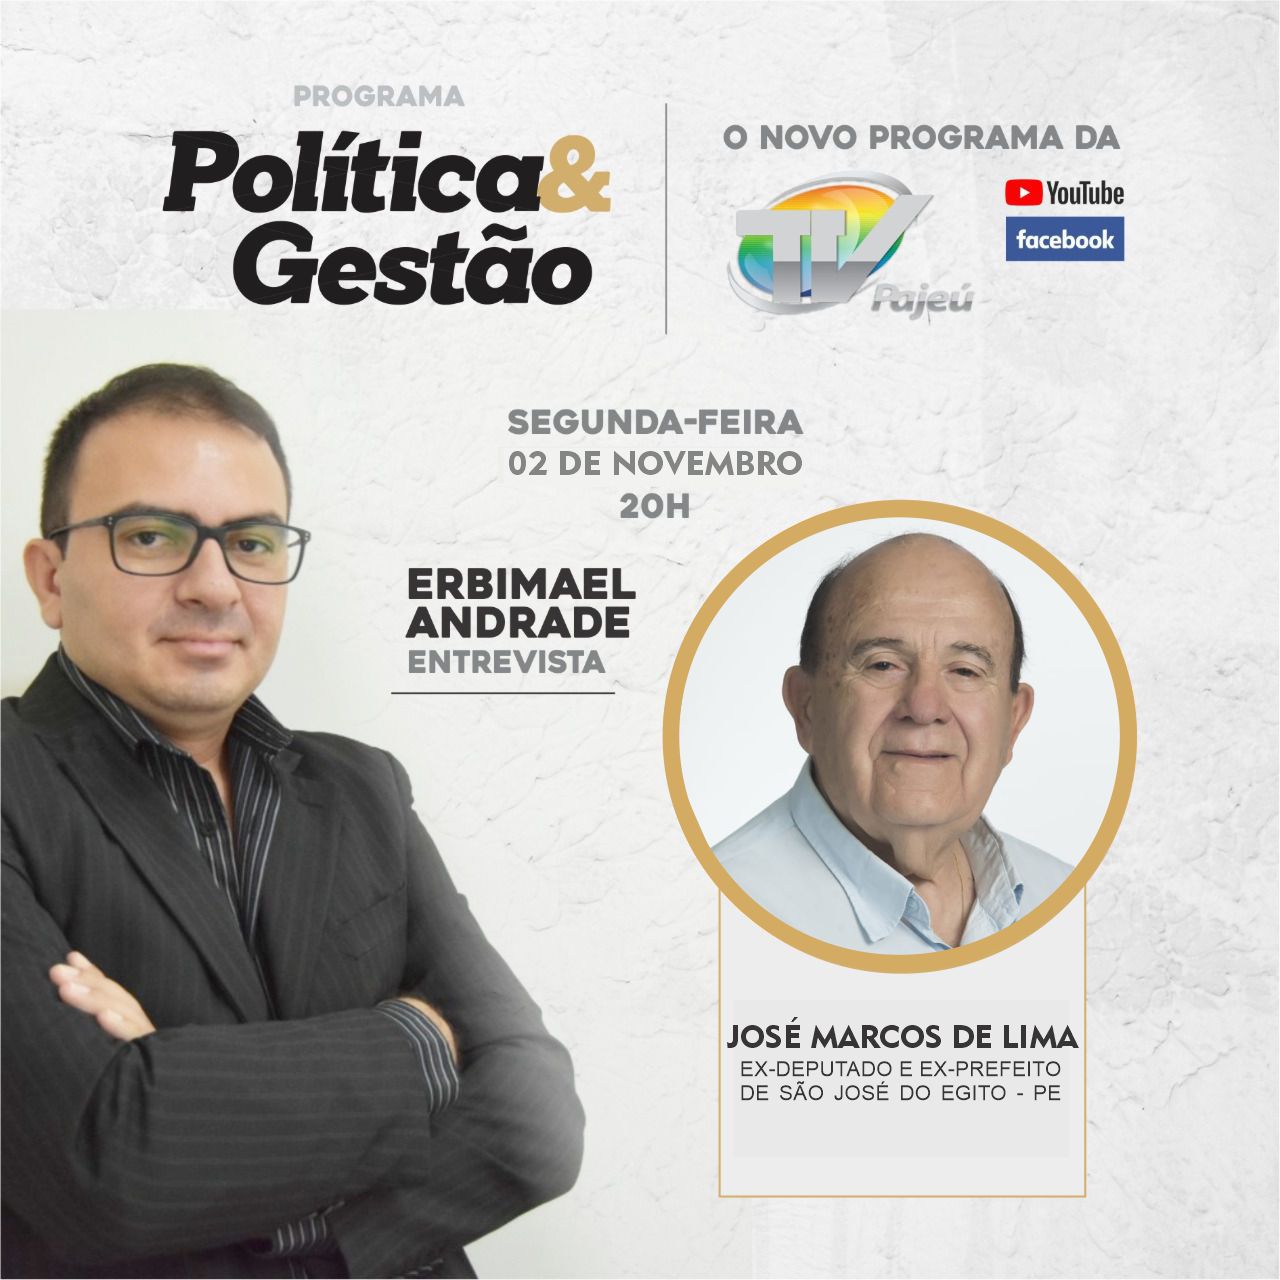 You are currently viewing Programa Política e Gestão da TV Pajeú vai conversar com o ex-deputado e ex-prefeito de São José do Egito Zé Marcos